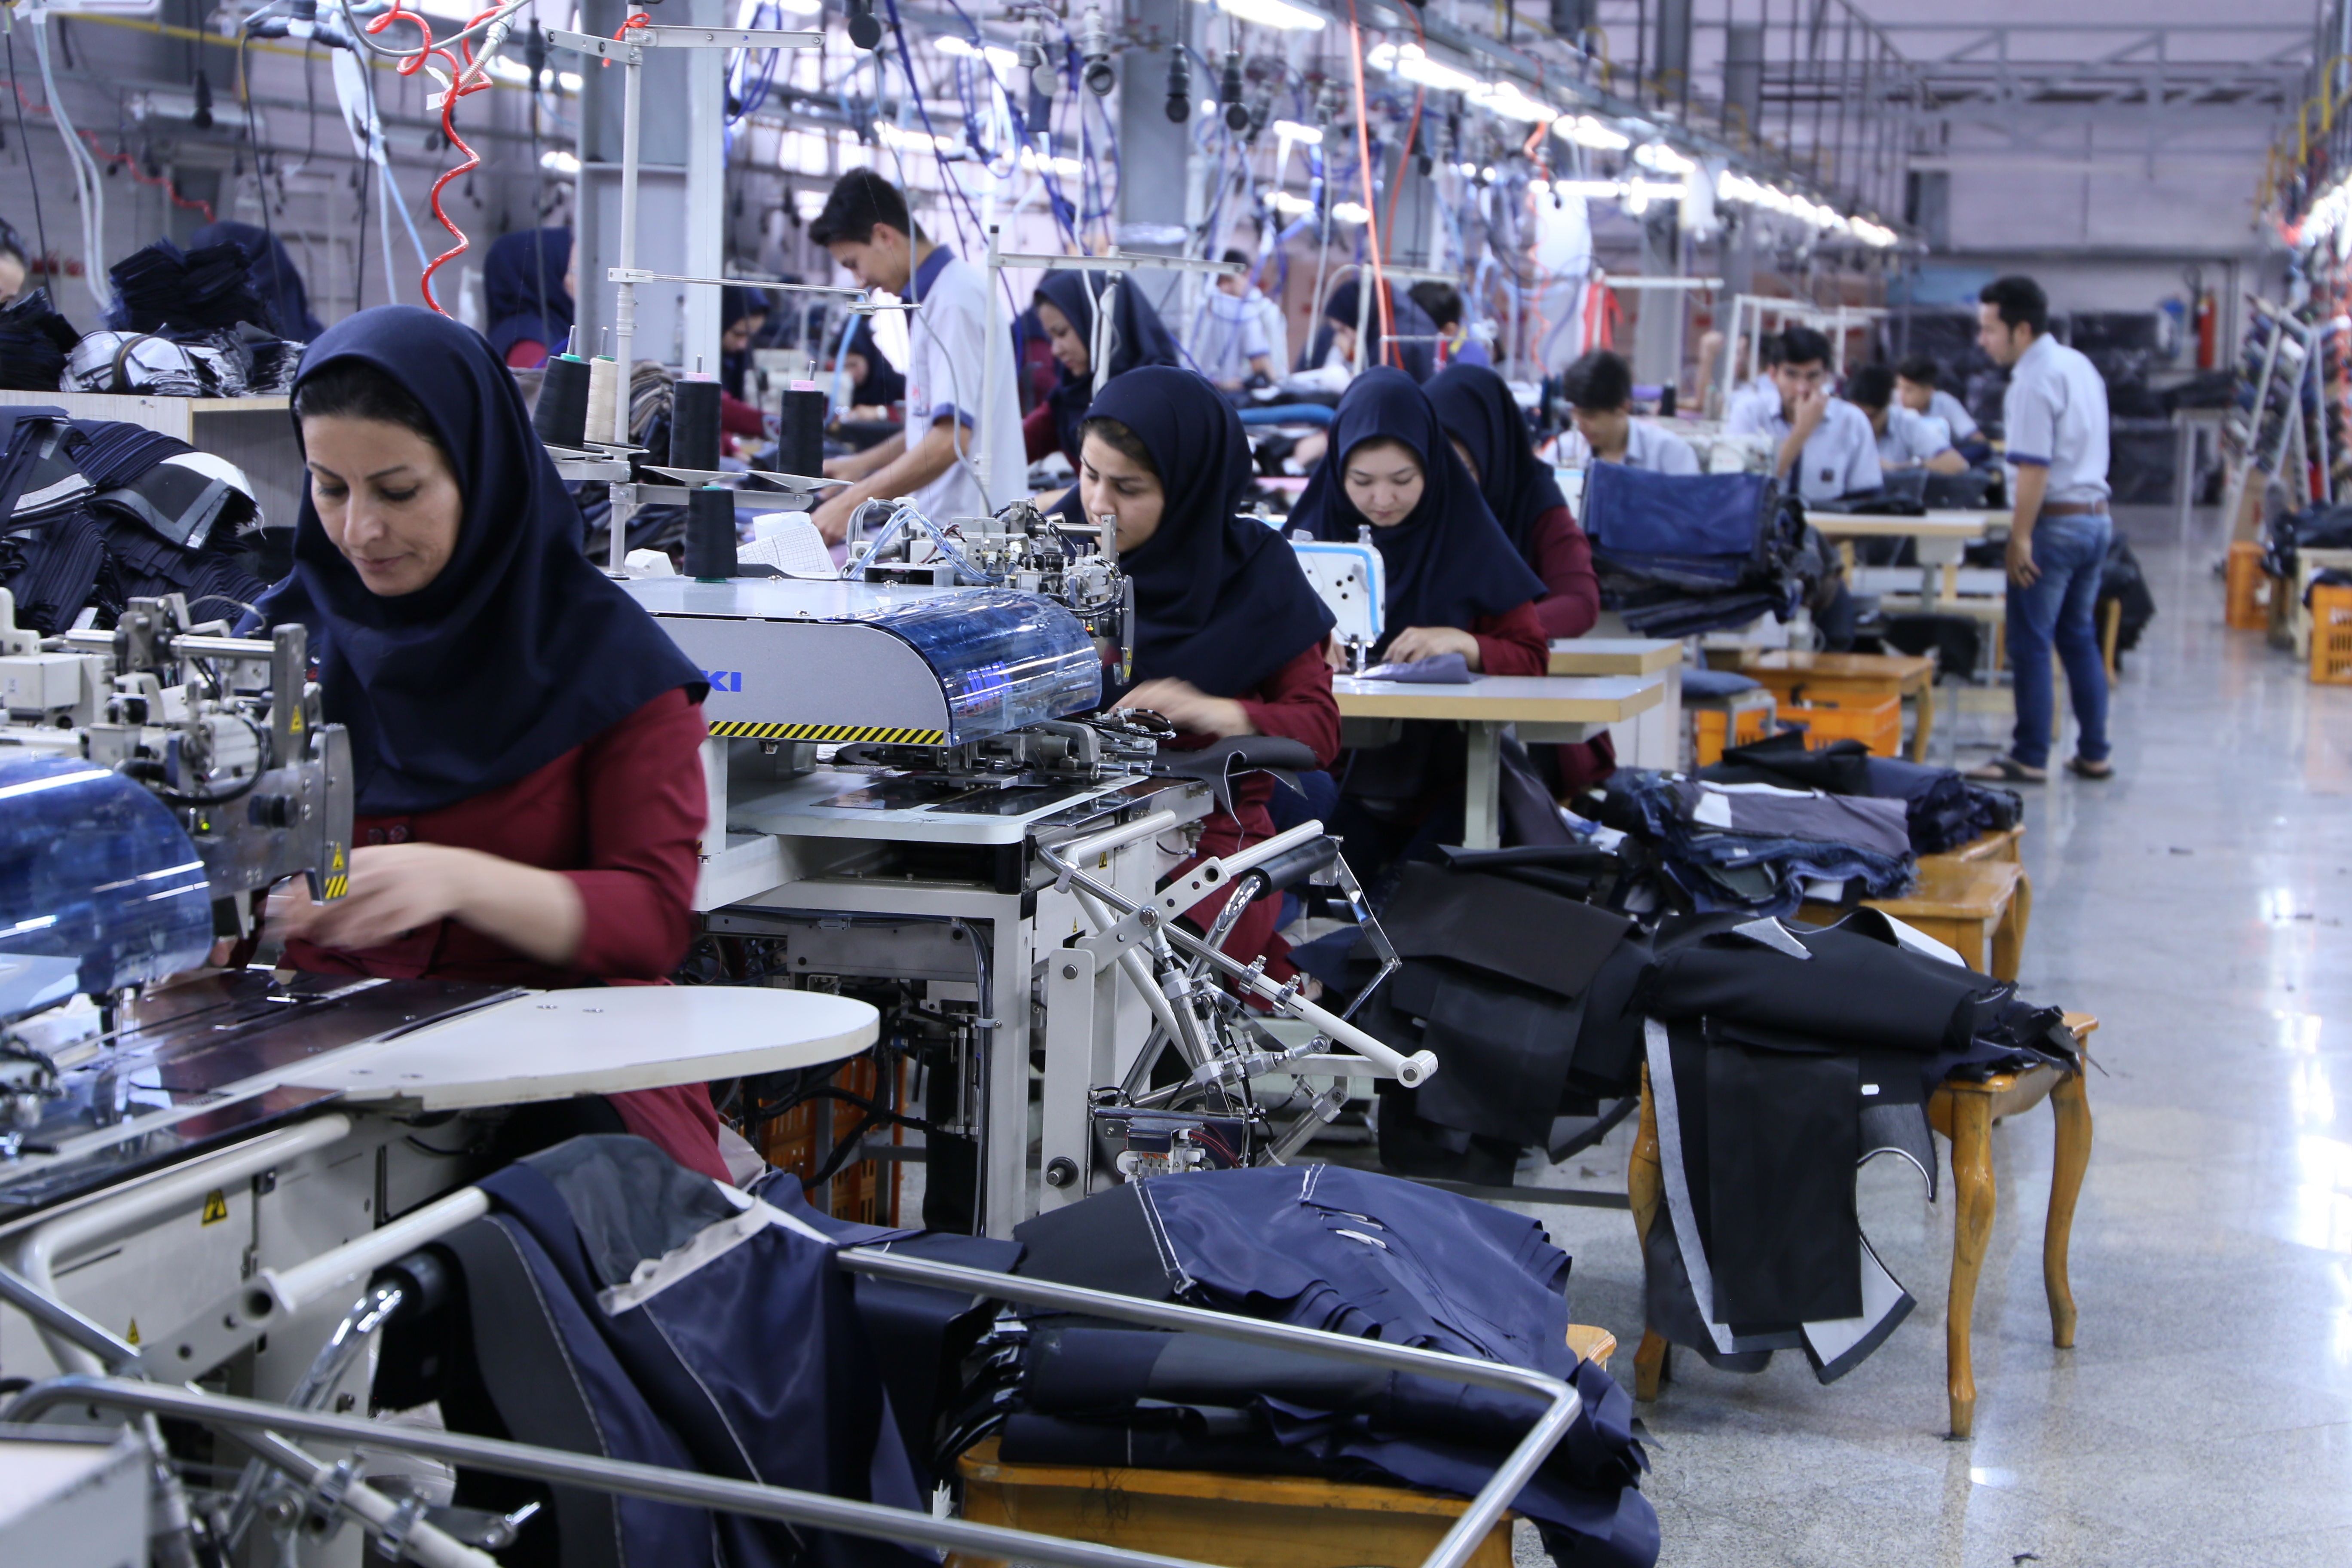 循環基金計劃支援的製衣廠為難民提供工作機會。